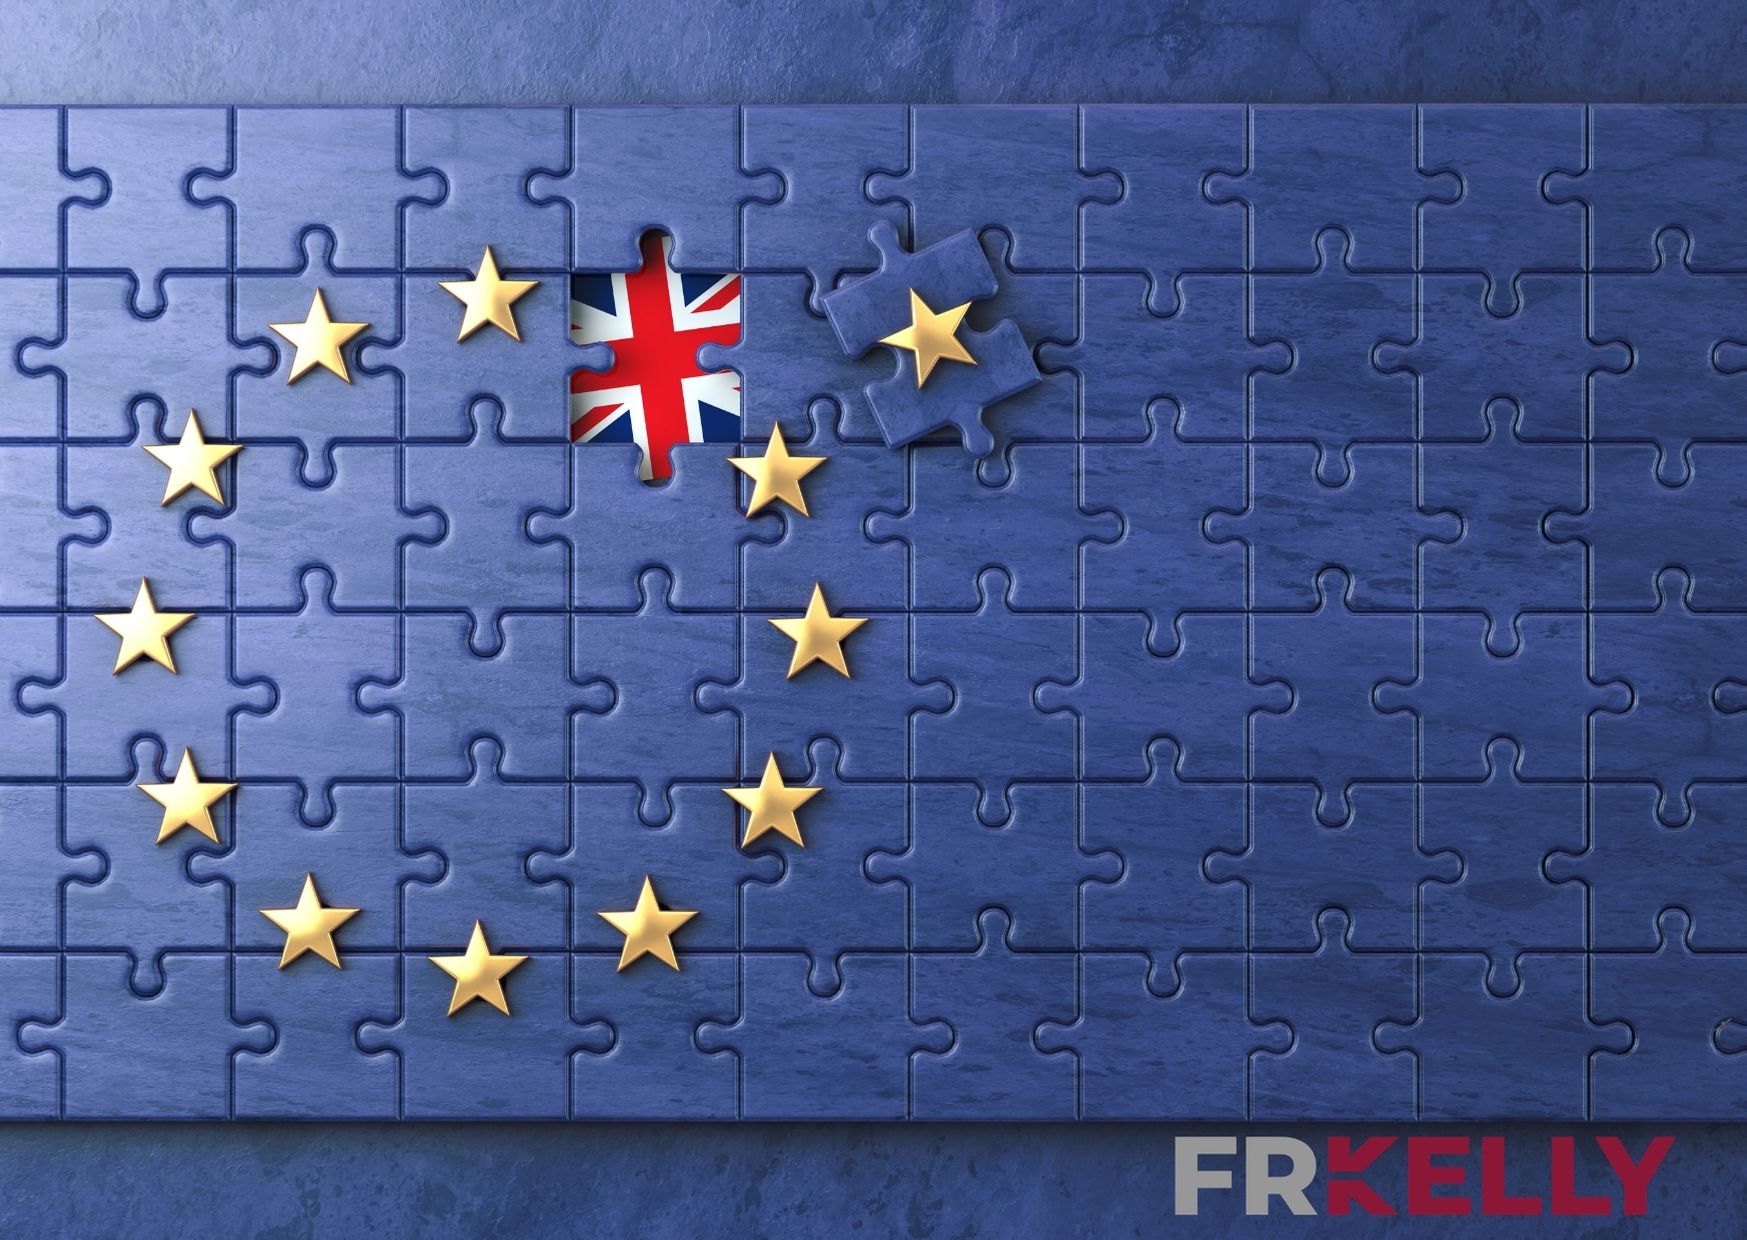 EU jigsaw revealing UK piece missing